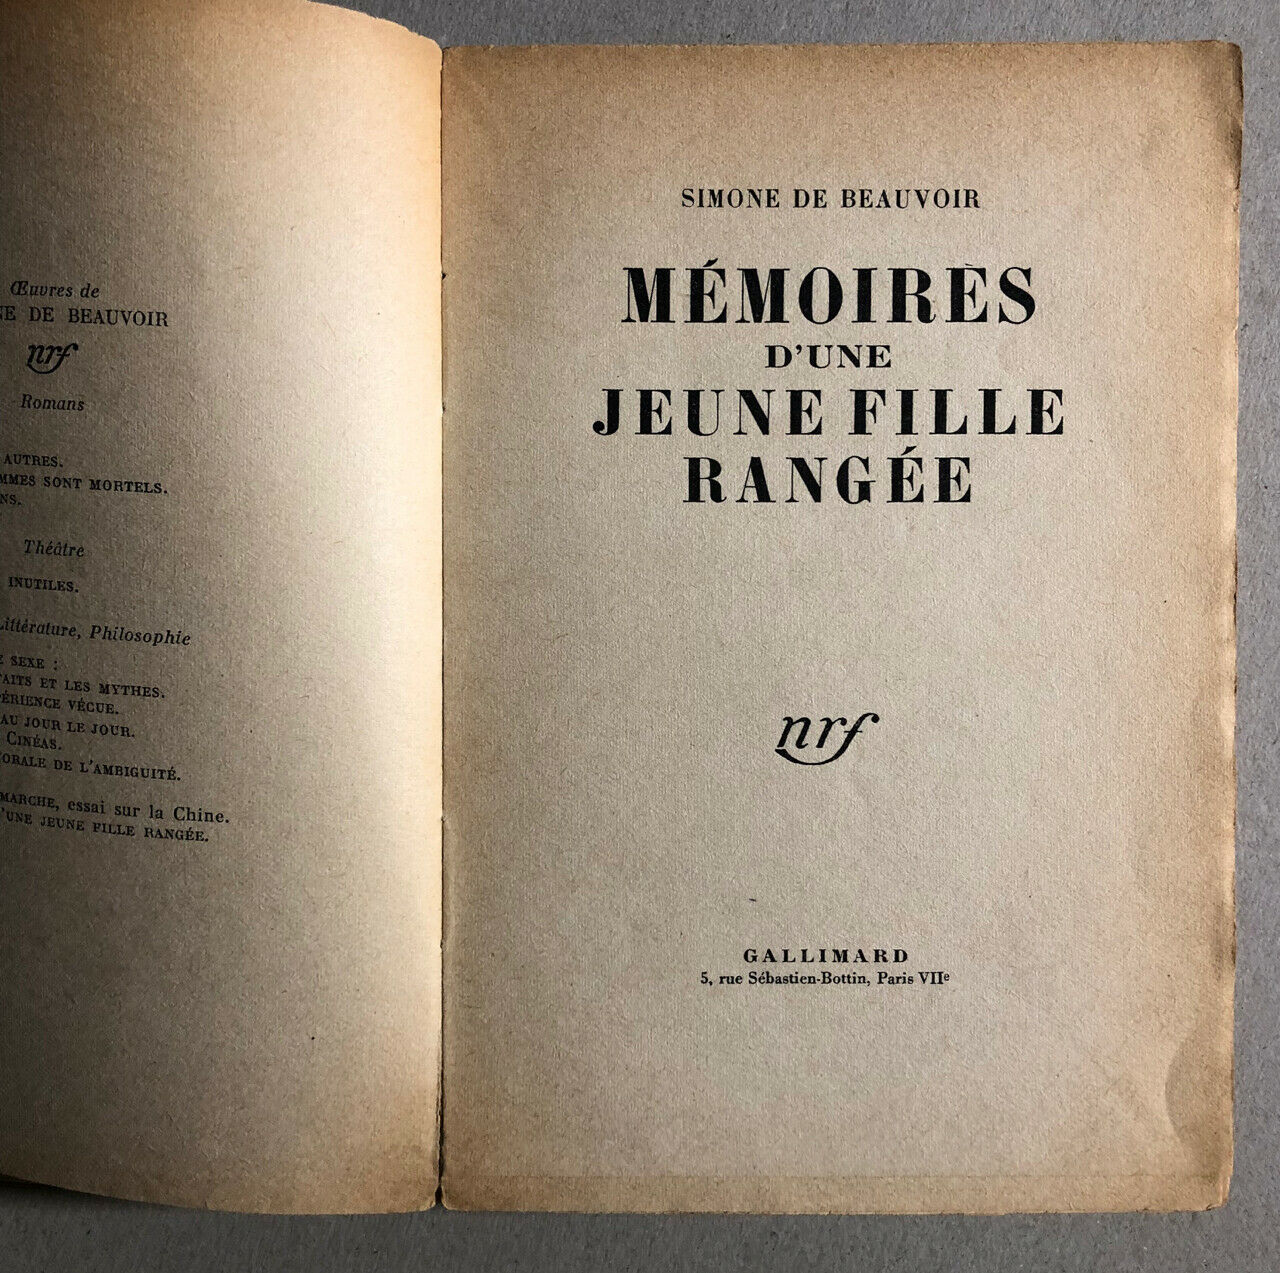 Simone de Beauvoir — Memoirs of a quiet young girl — É. O. autograph